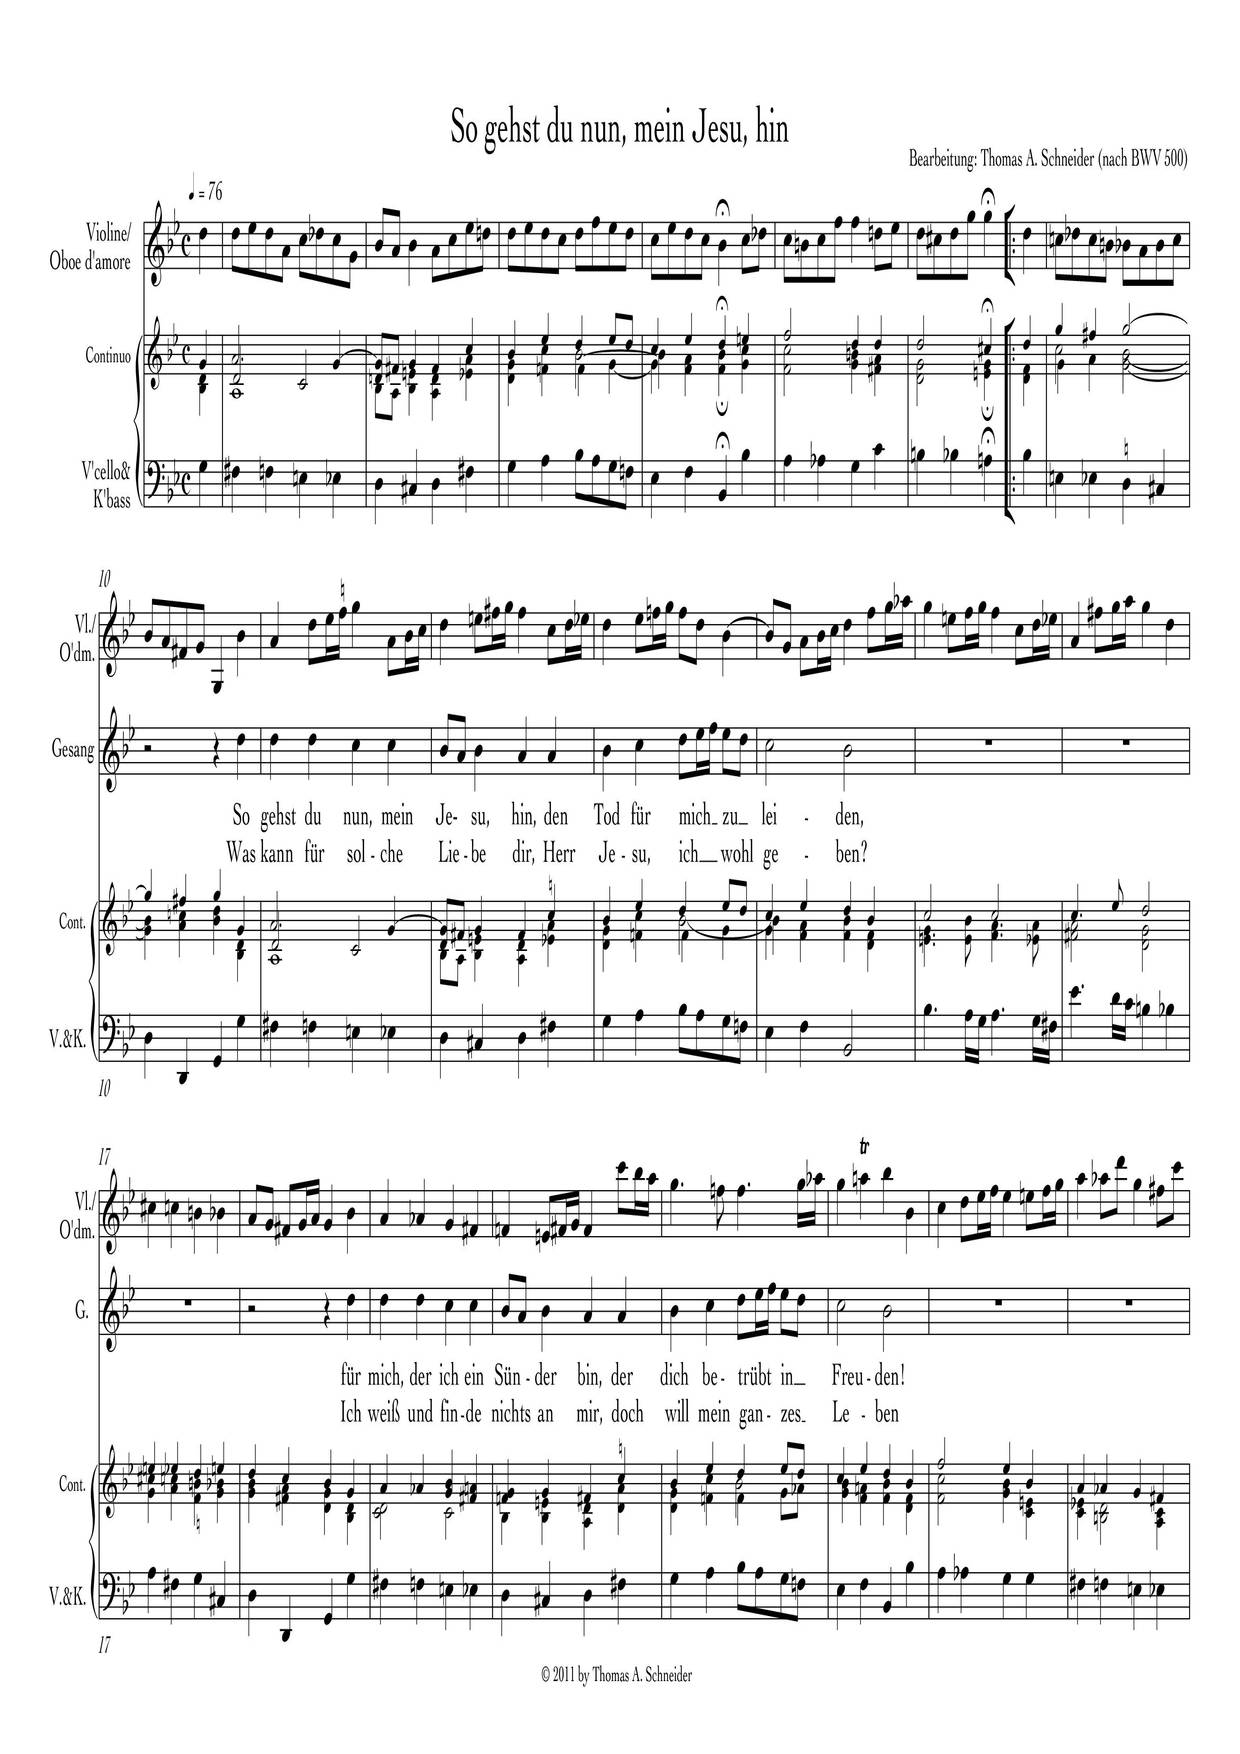 So Gehst Du Nun, Mein Jesu, Hin, BWV 500ピアノ譜